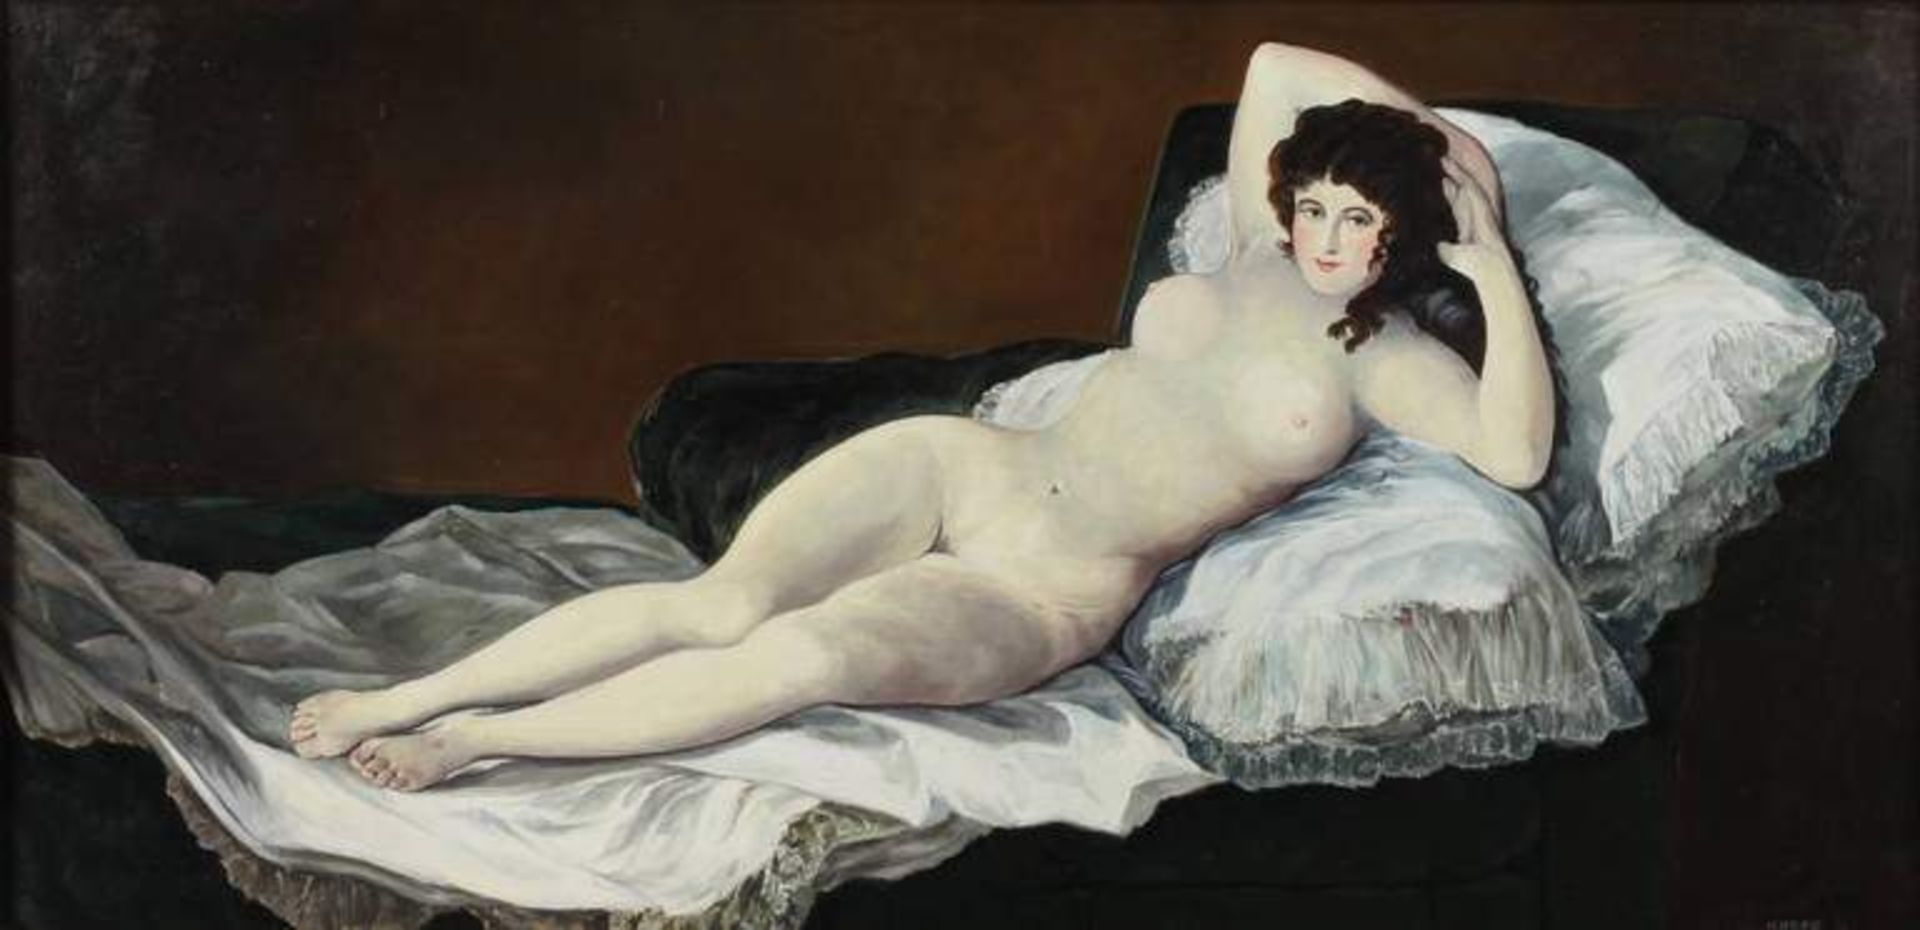 Paul Kober, "Die nackte Maja" nach Goya Bildnis einer nackten Schönheit mit üppigen Brüsten auf